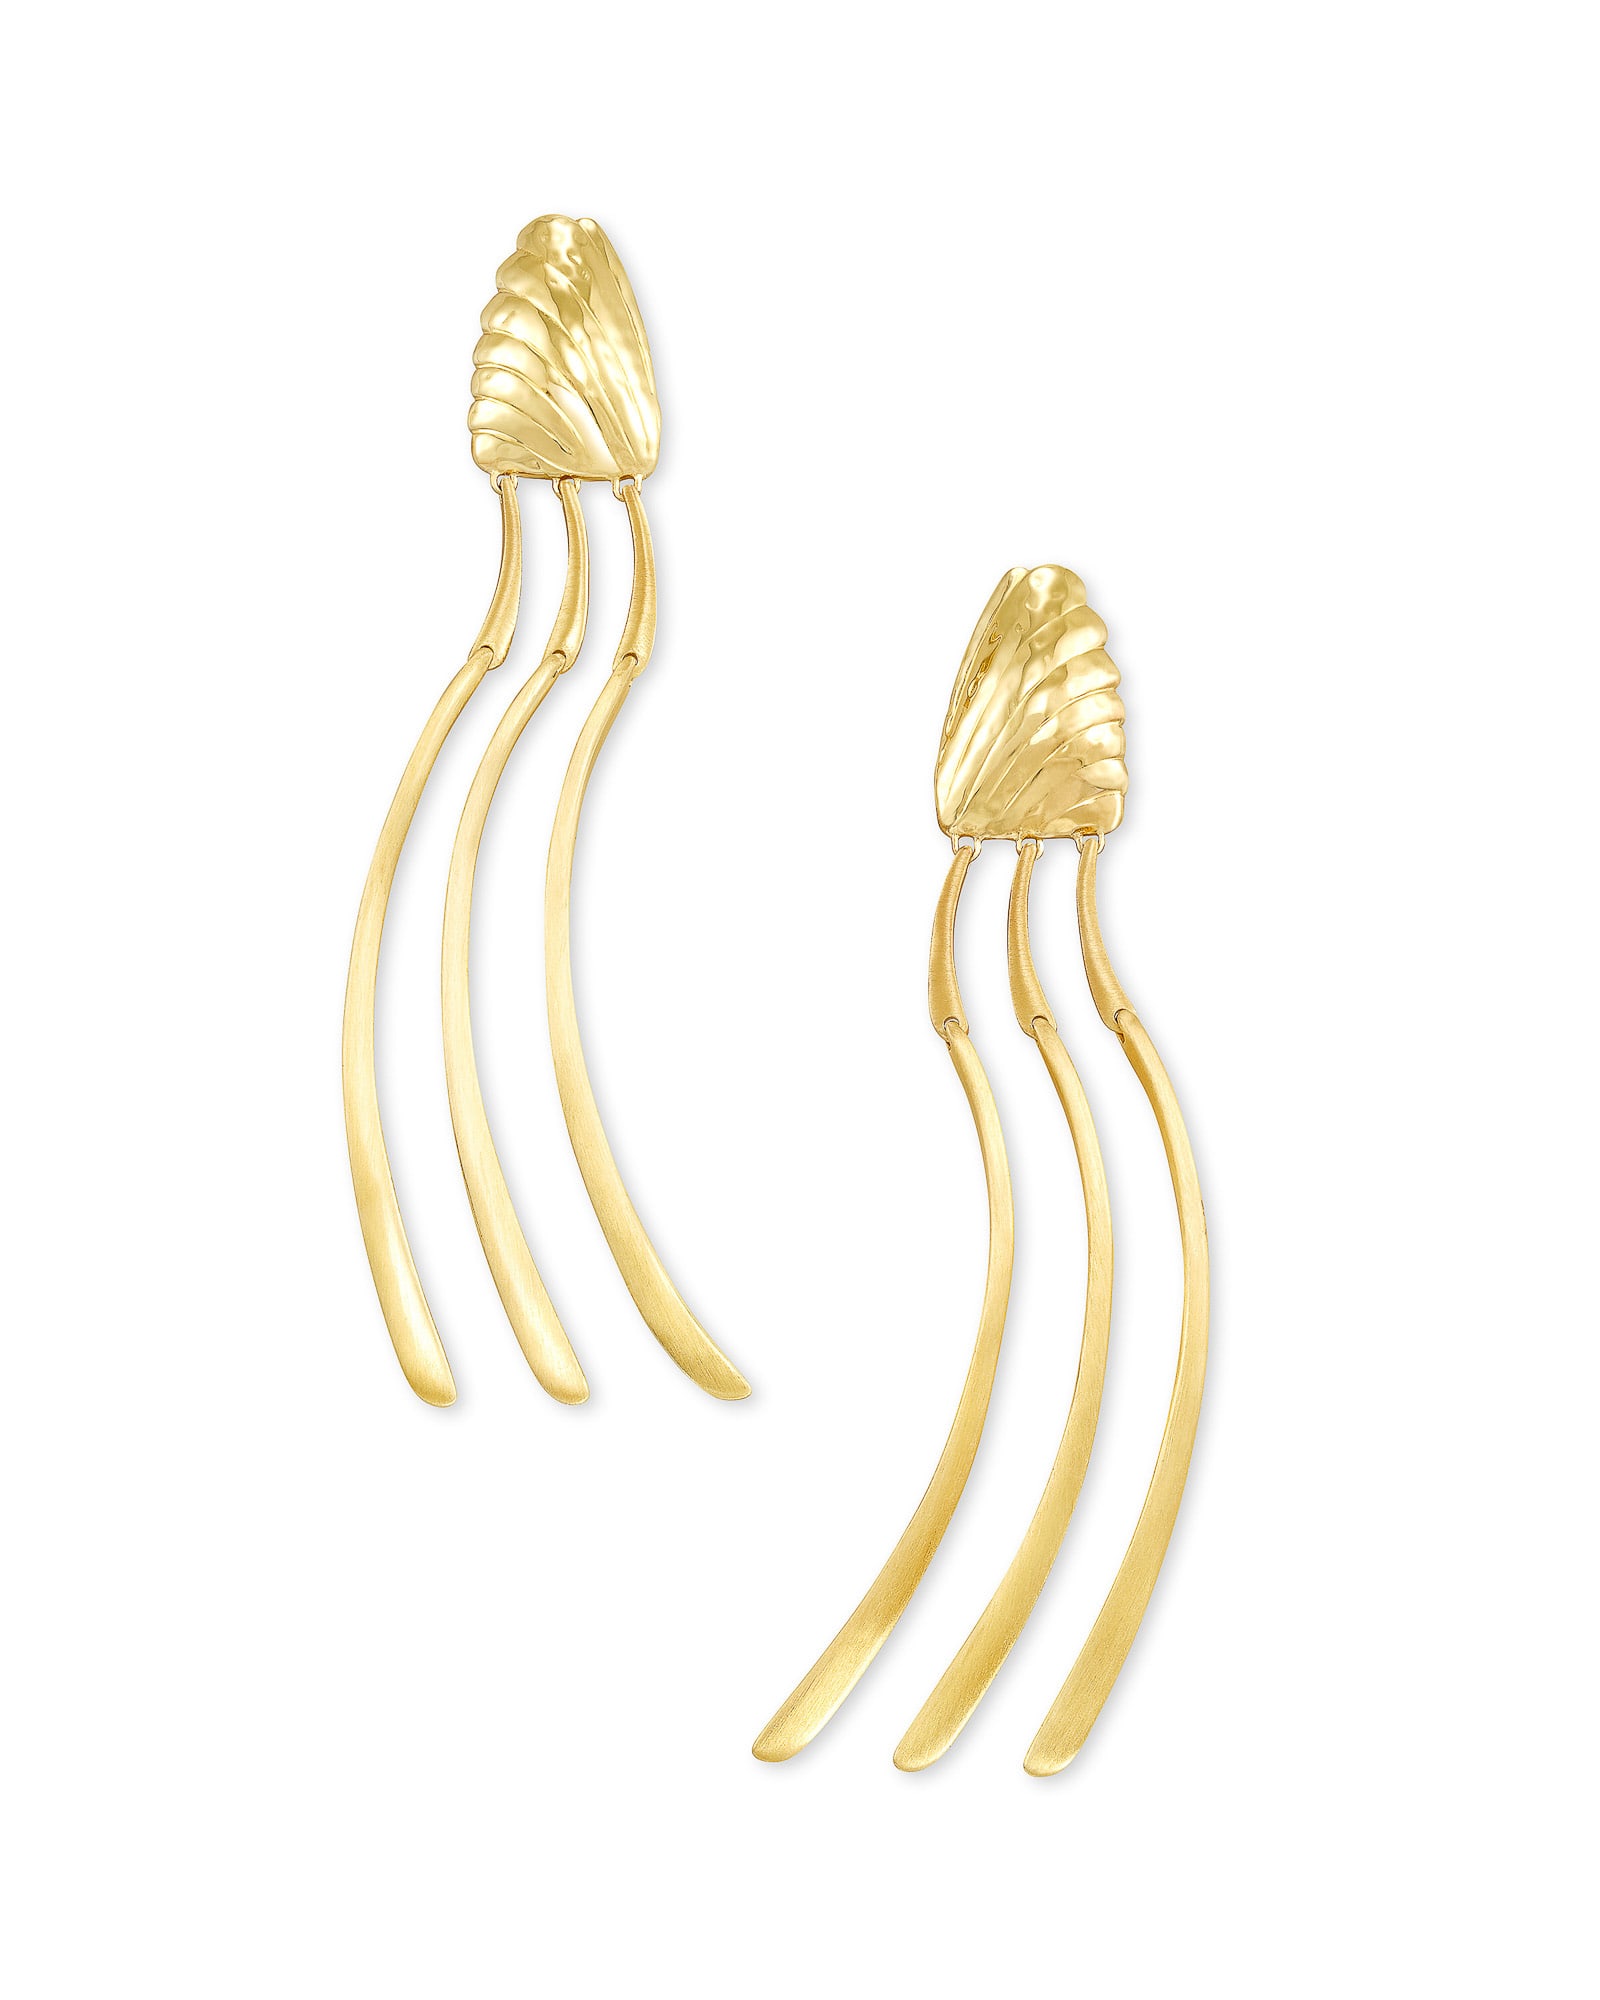 Lori Linear Earrings in Gold